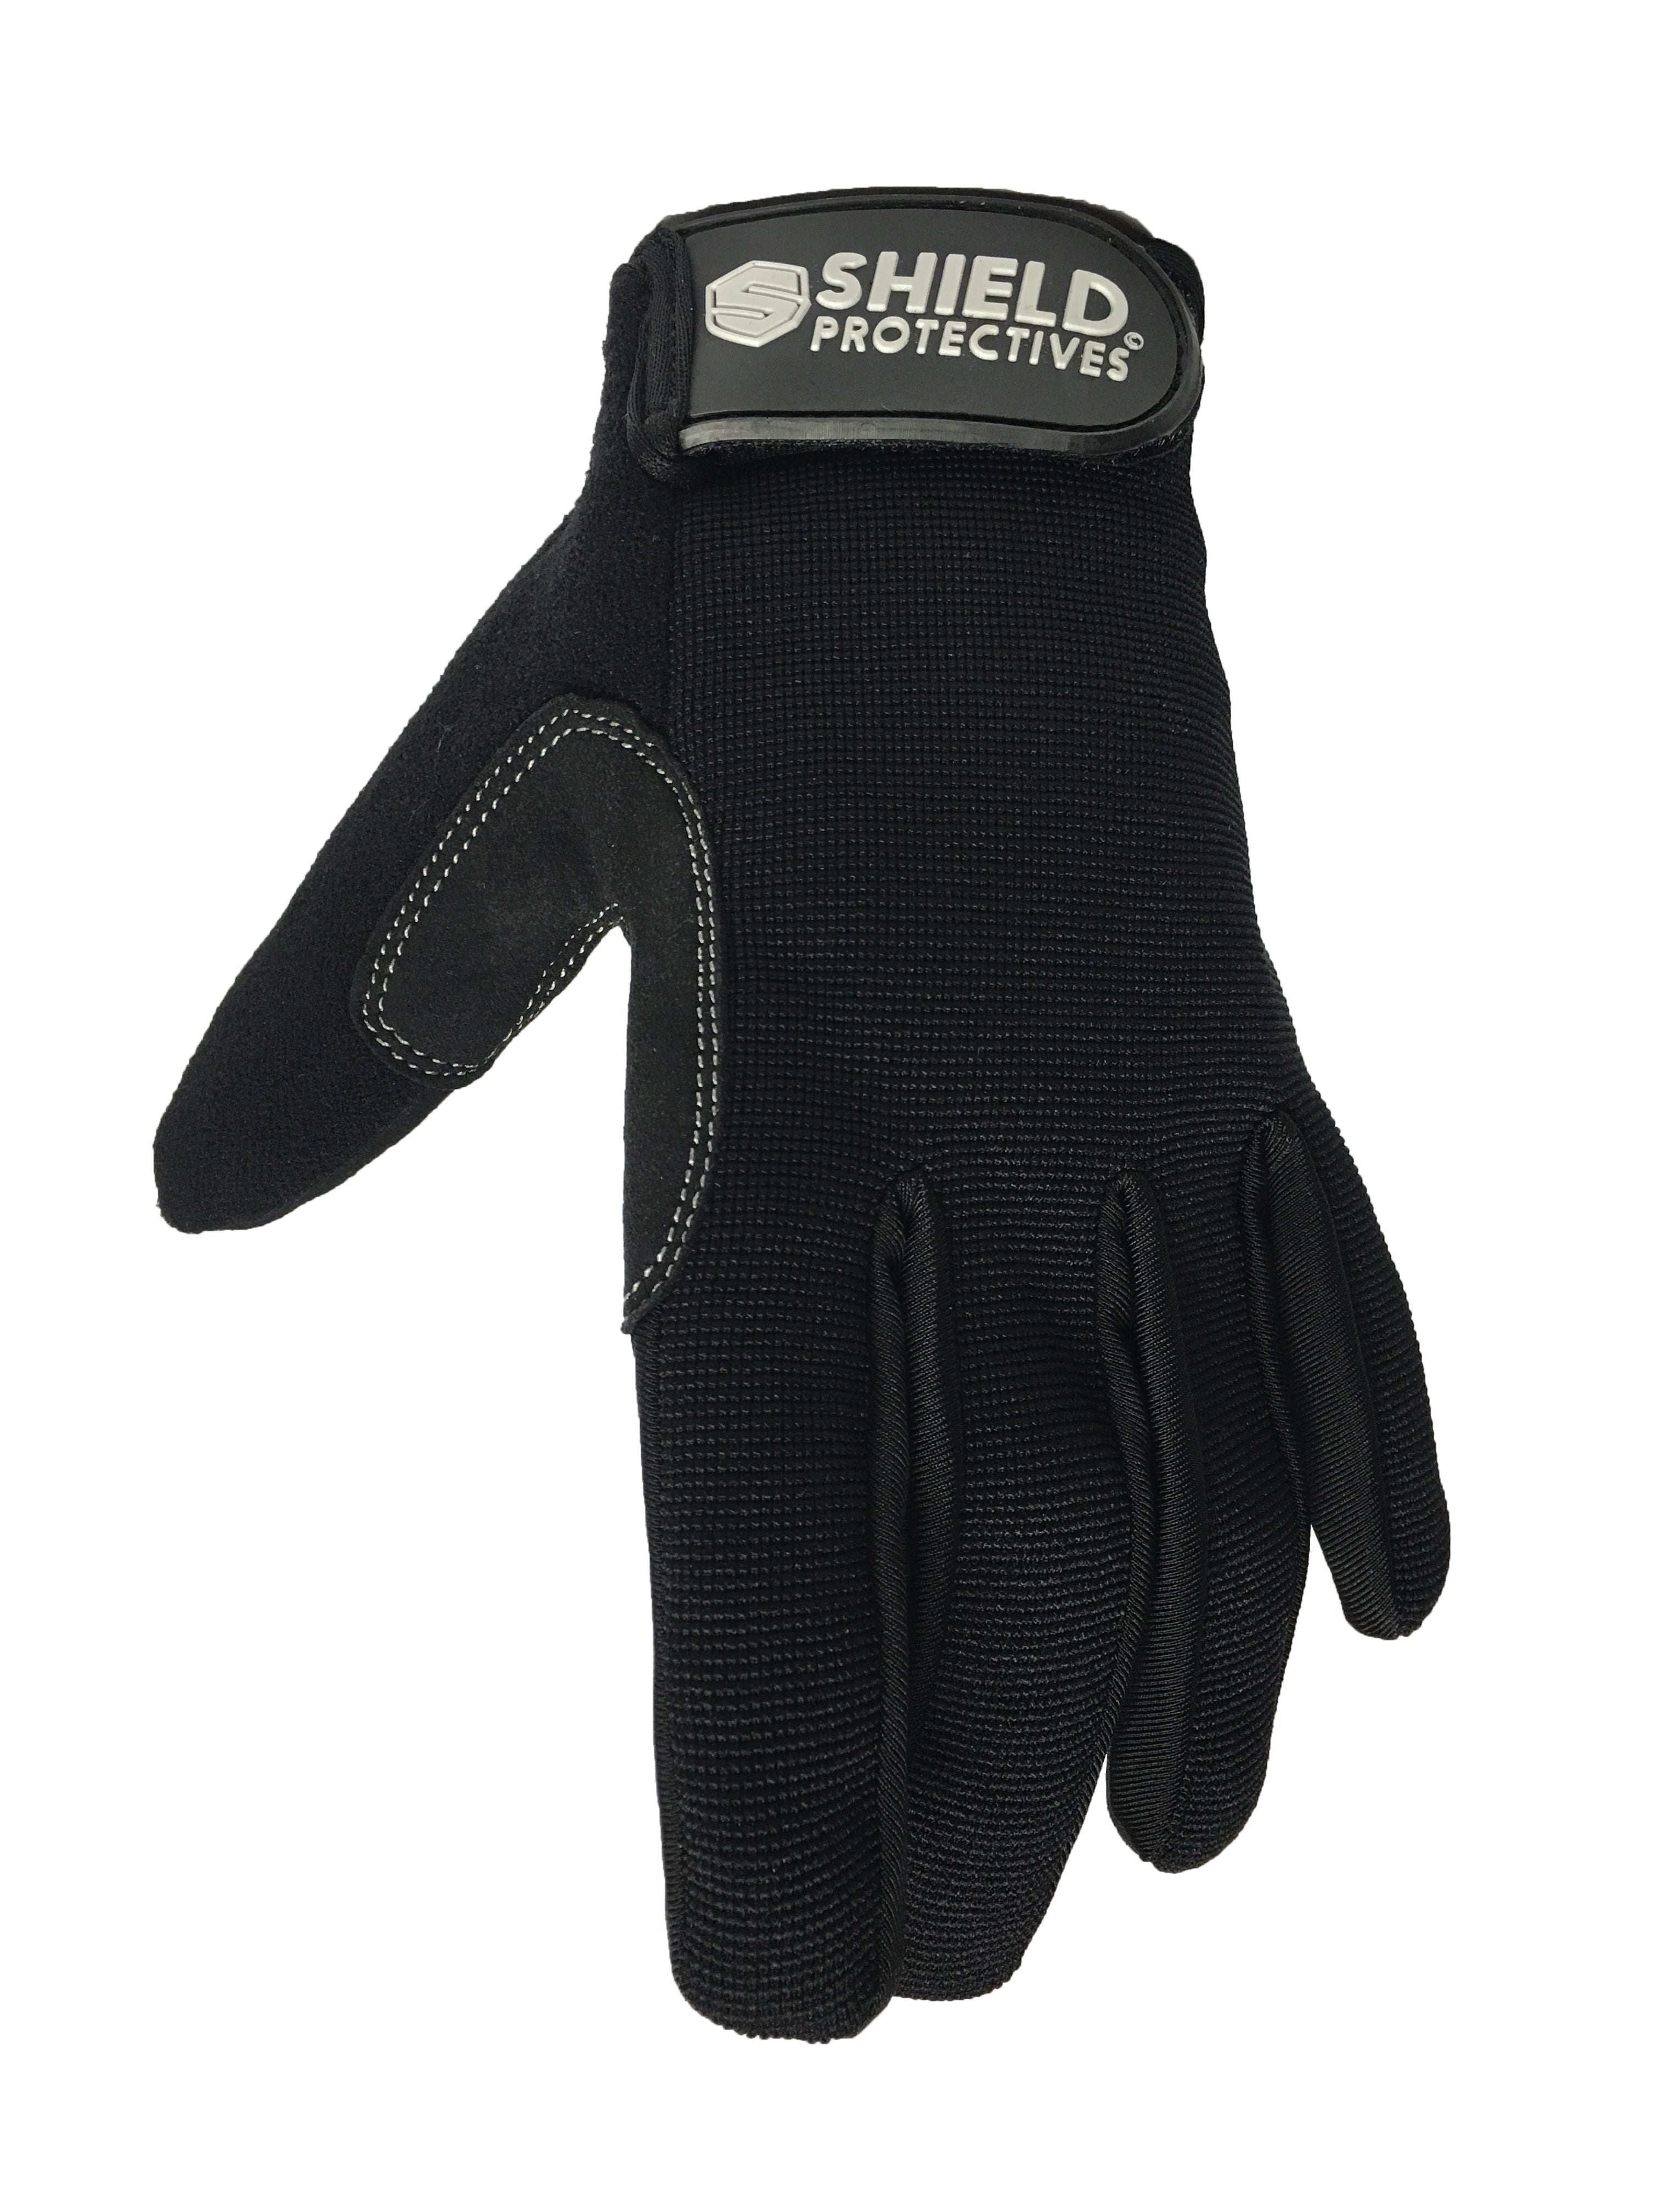 Shield Protective Full Finger Gloves Black